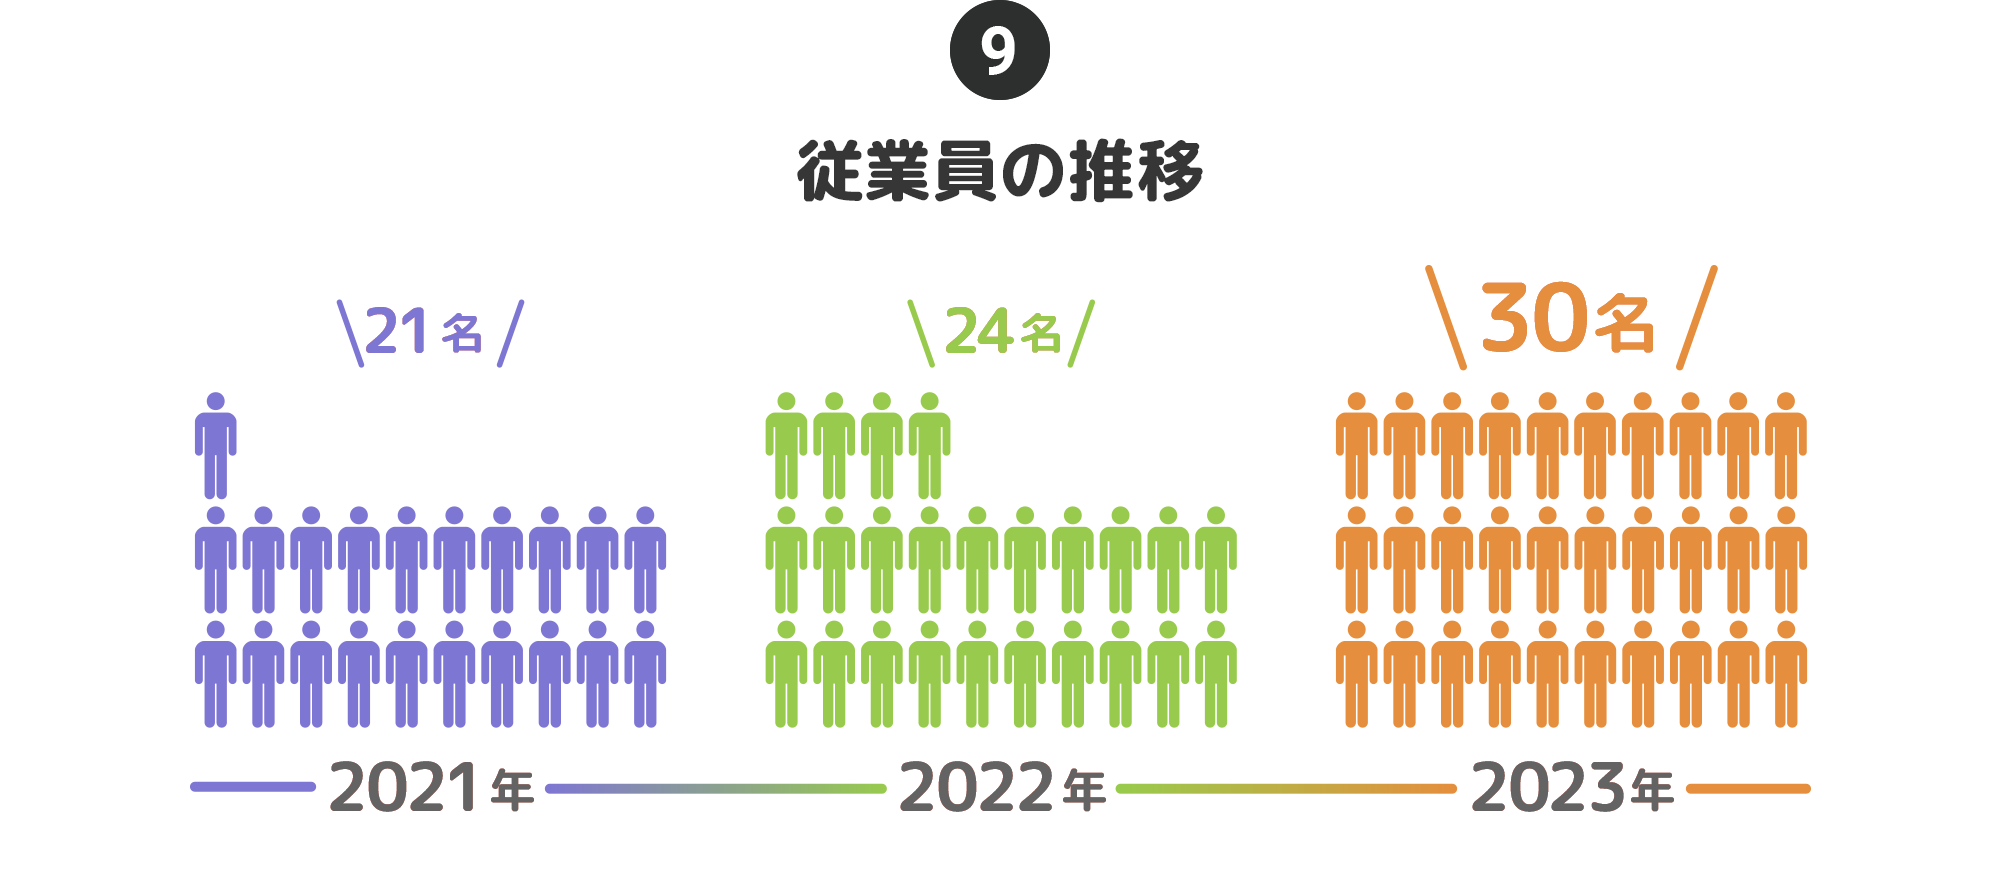 ⑨従業員の推移…2021年:21名→2022年:24名→2023年:30名